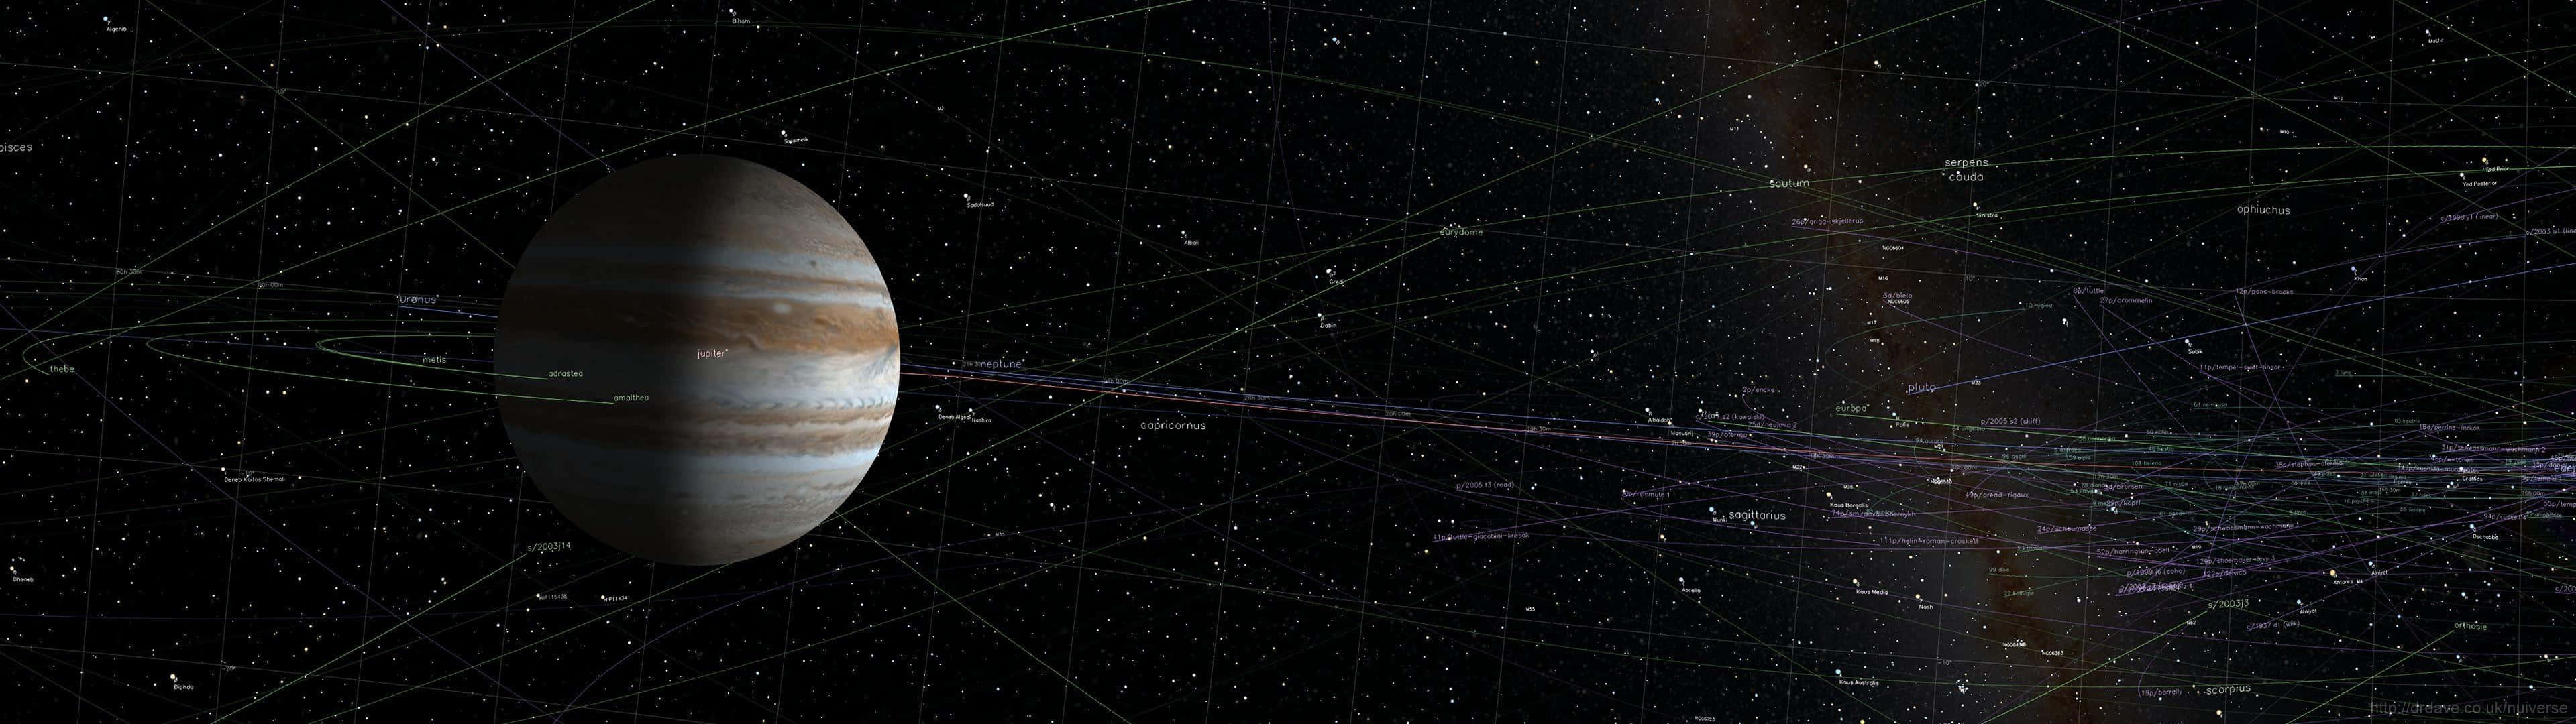 Et rumskib vises med en planet og andre rumskibe i baggrunden Wallpaper